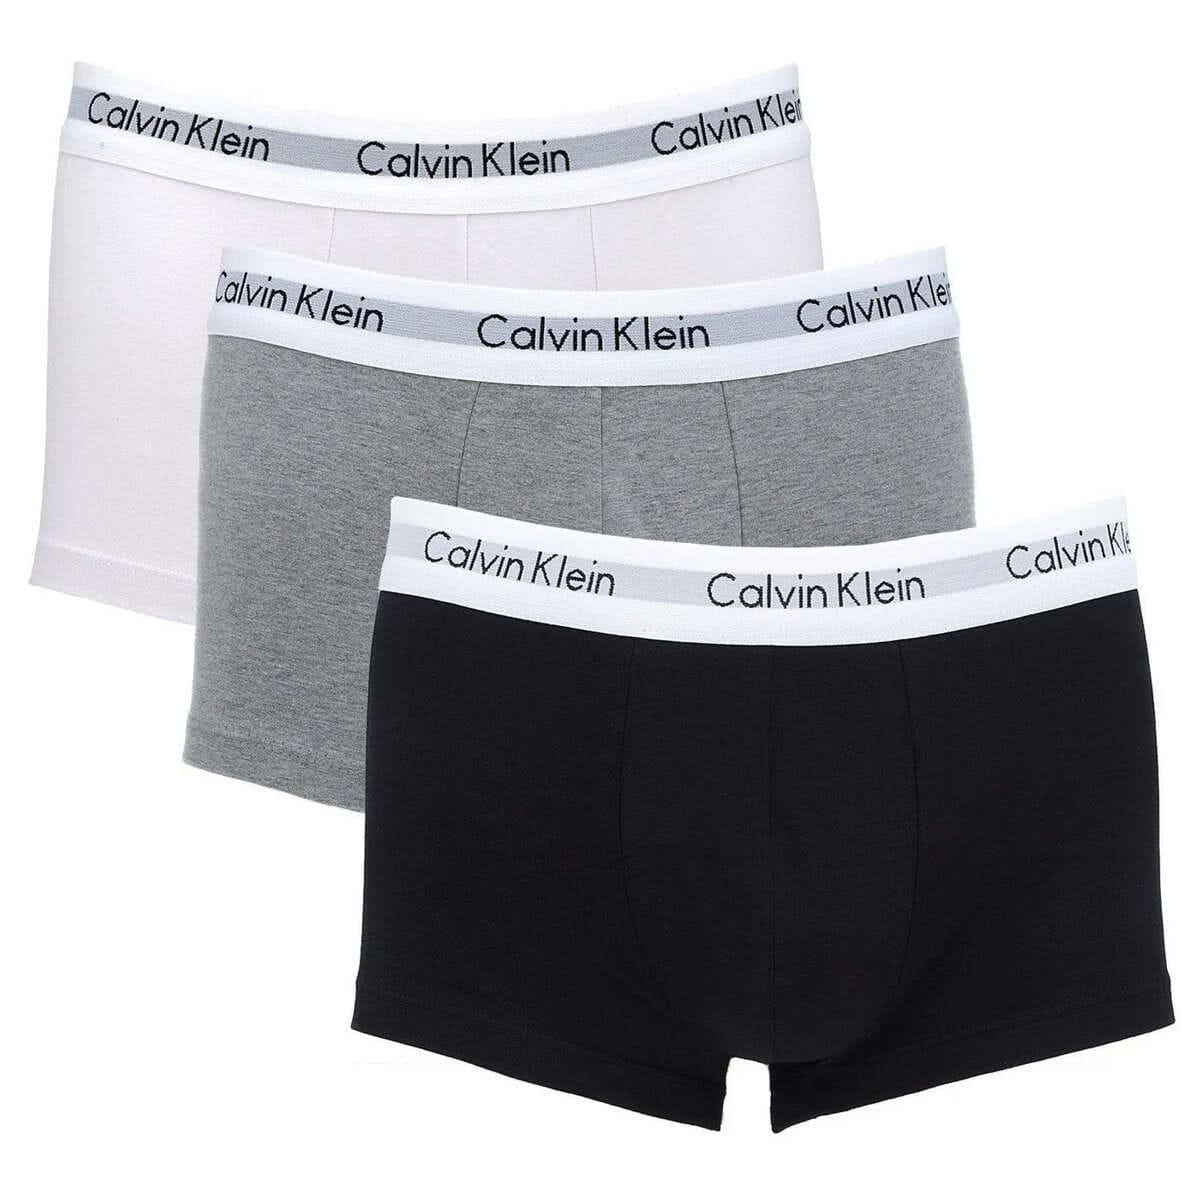 Cueca Calvin Klein Jockstrap Masculina - Preto